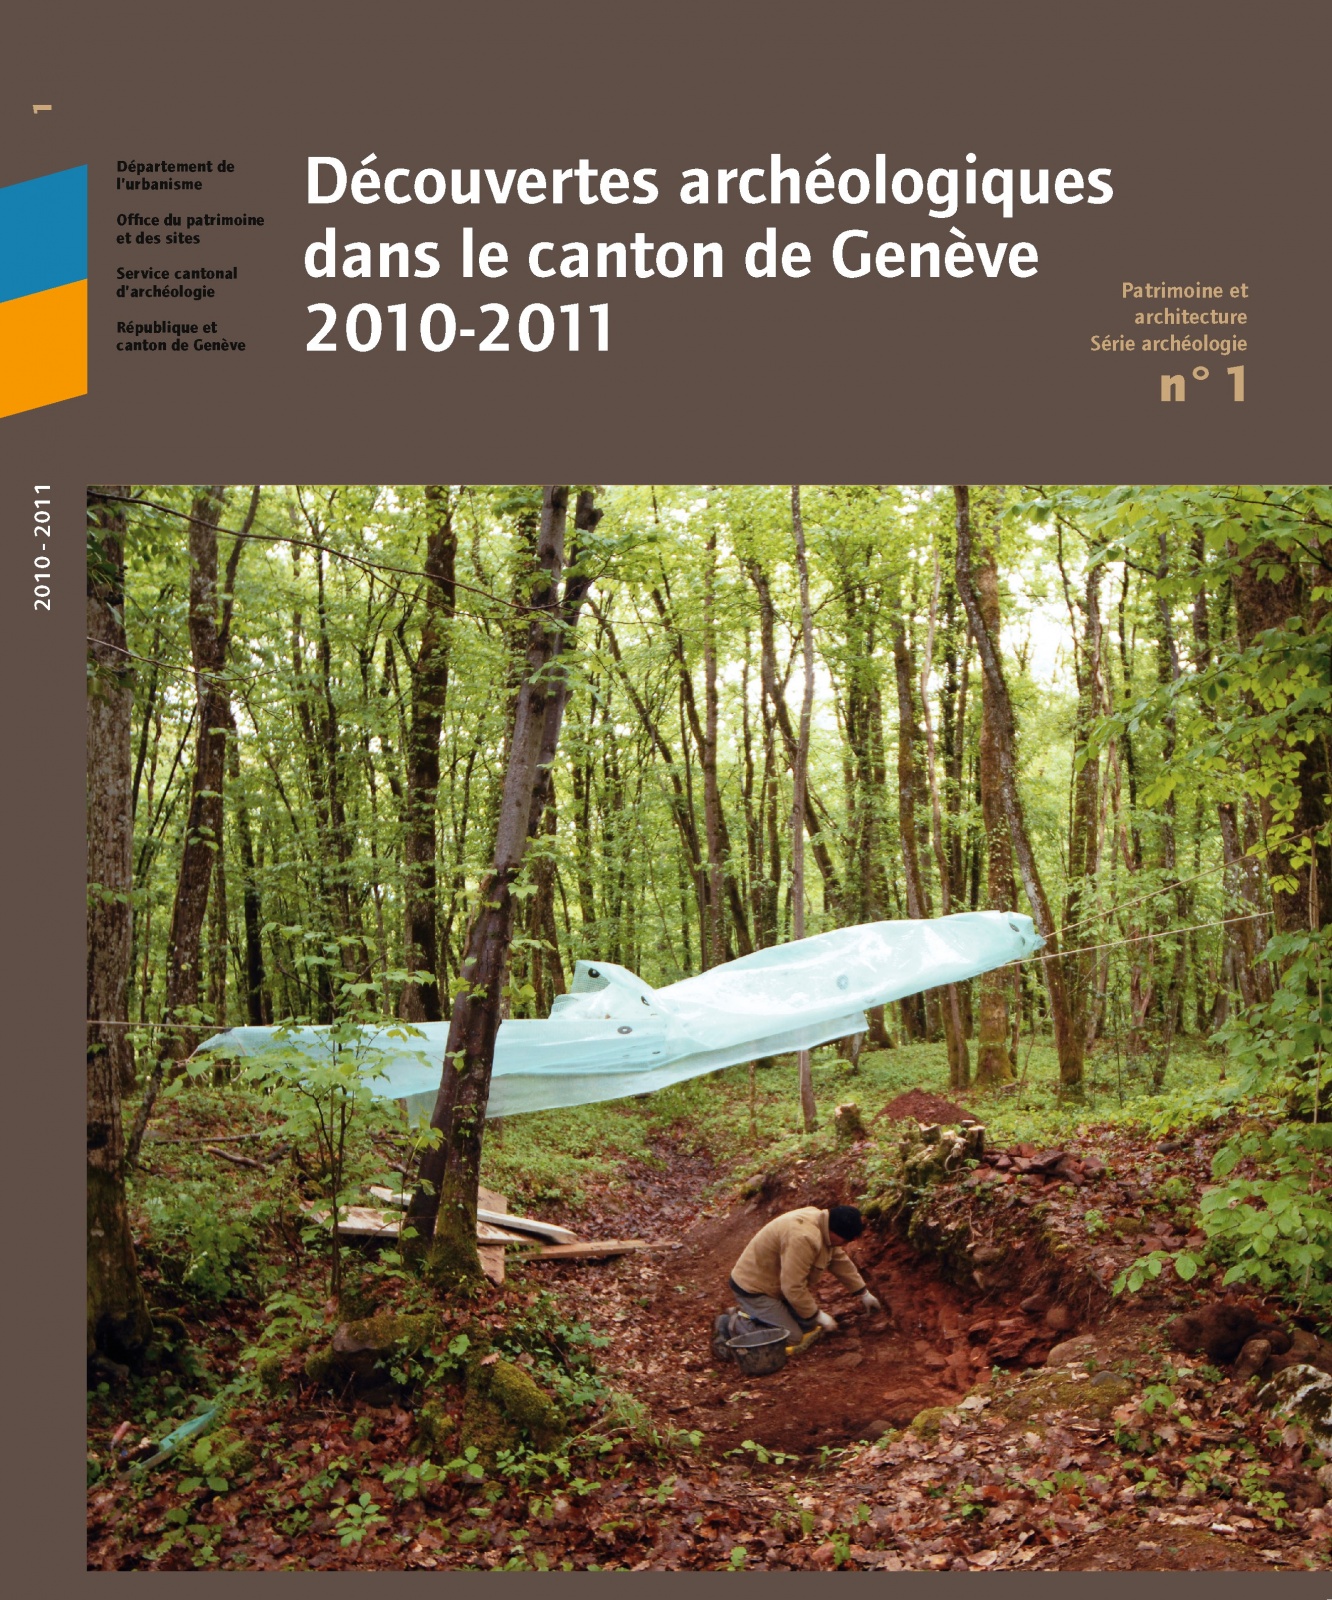 Découvertes archéologiques, 2010-2011